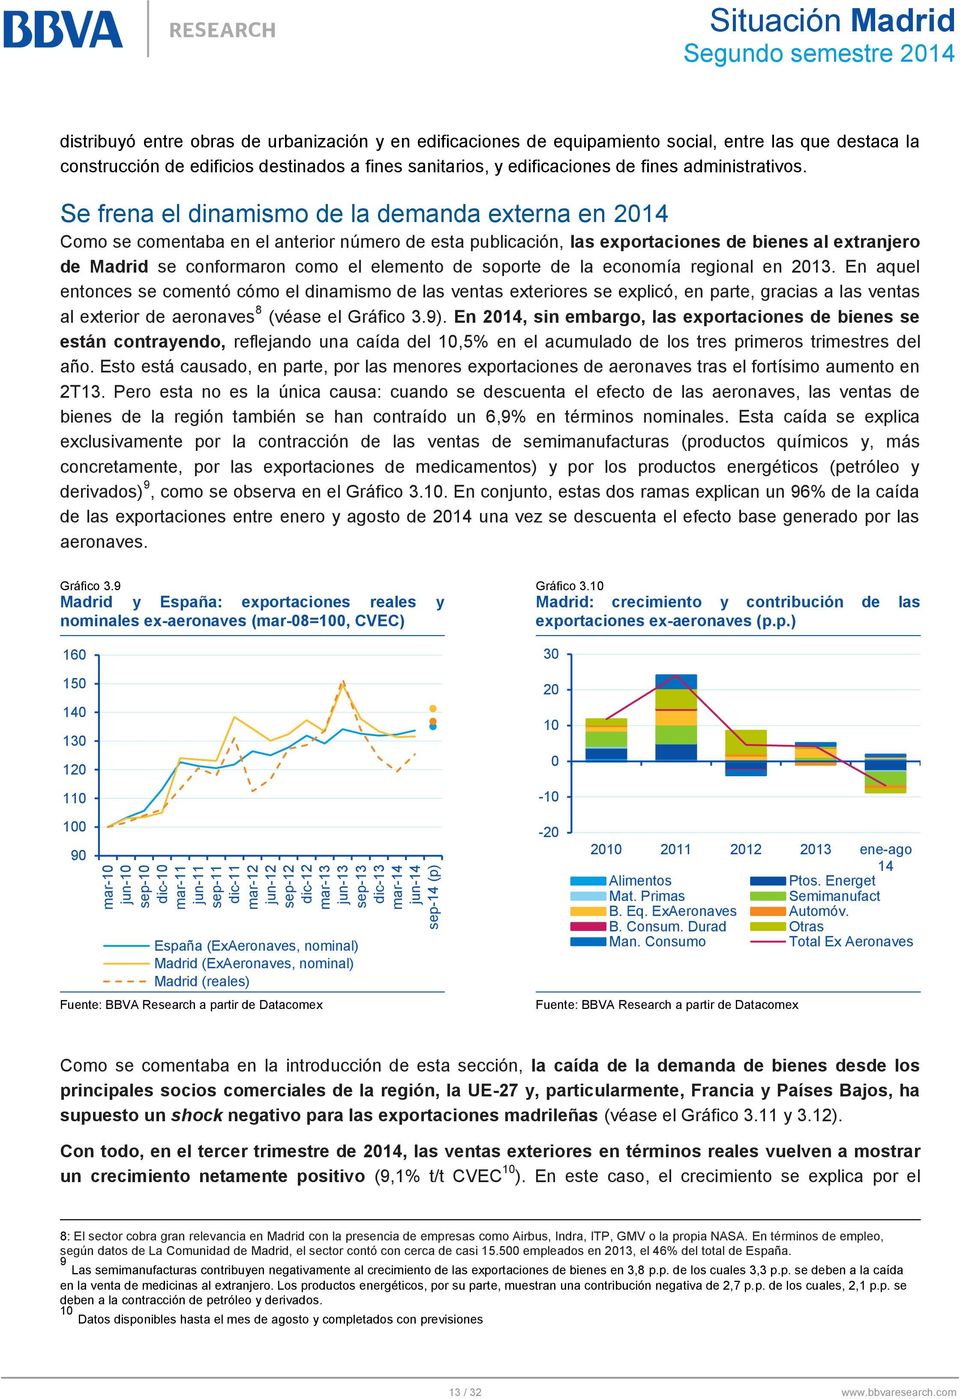 Se frena el dinamismo de la demanda externa en 2014 Como se comentaba en el anterior número de esta publicación, las exportaciones de bienes al extranjero de Madrid se conformaron como el elemento de